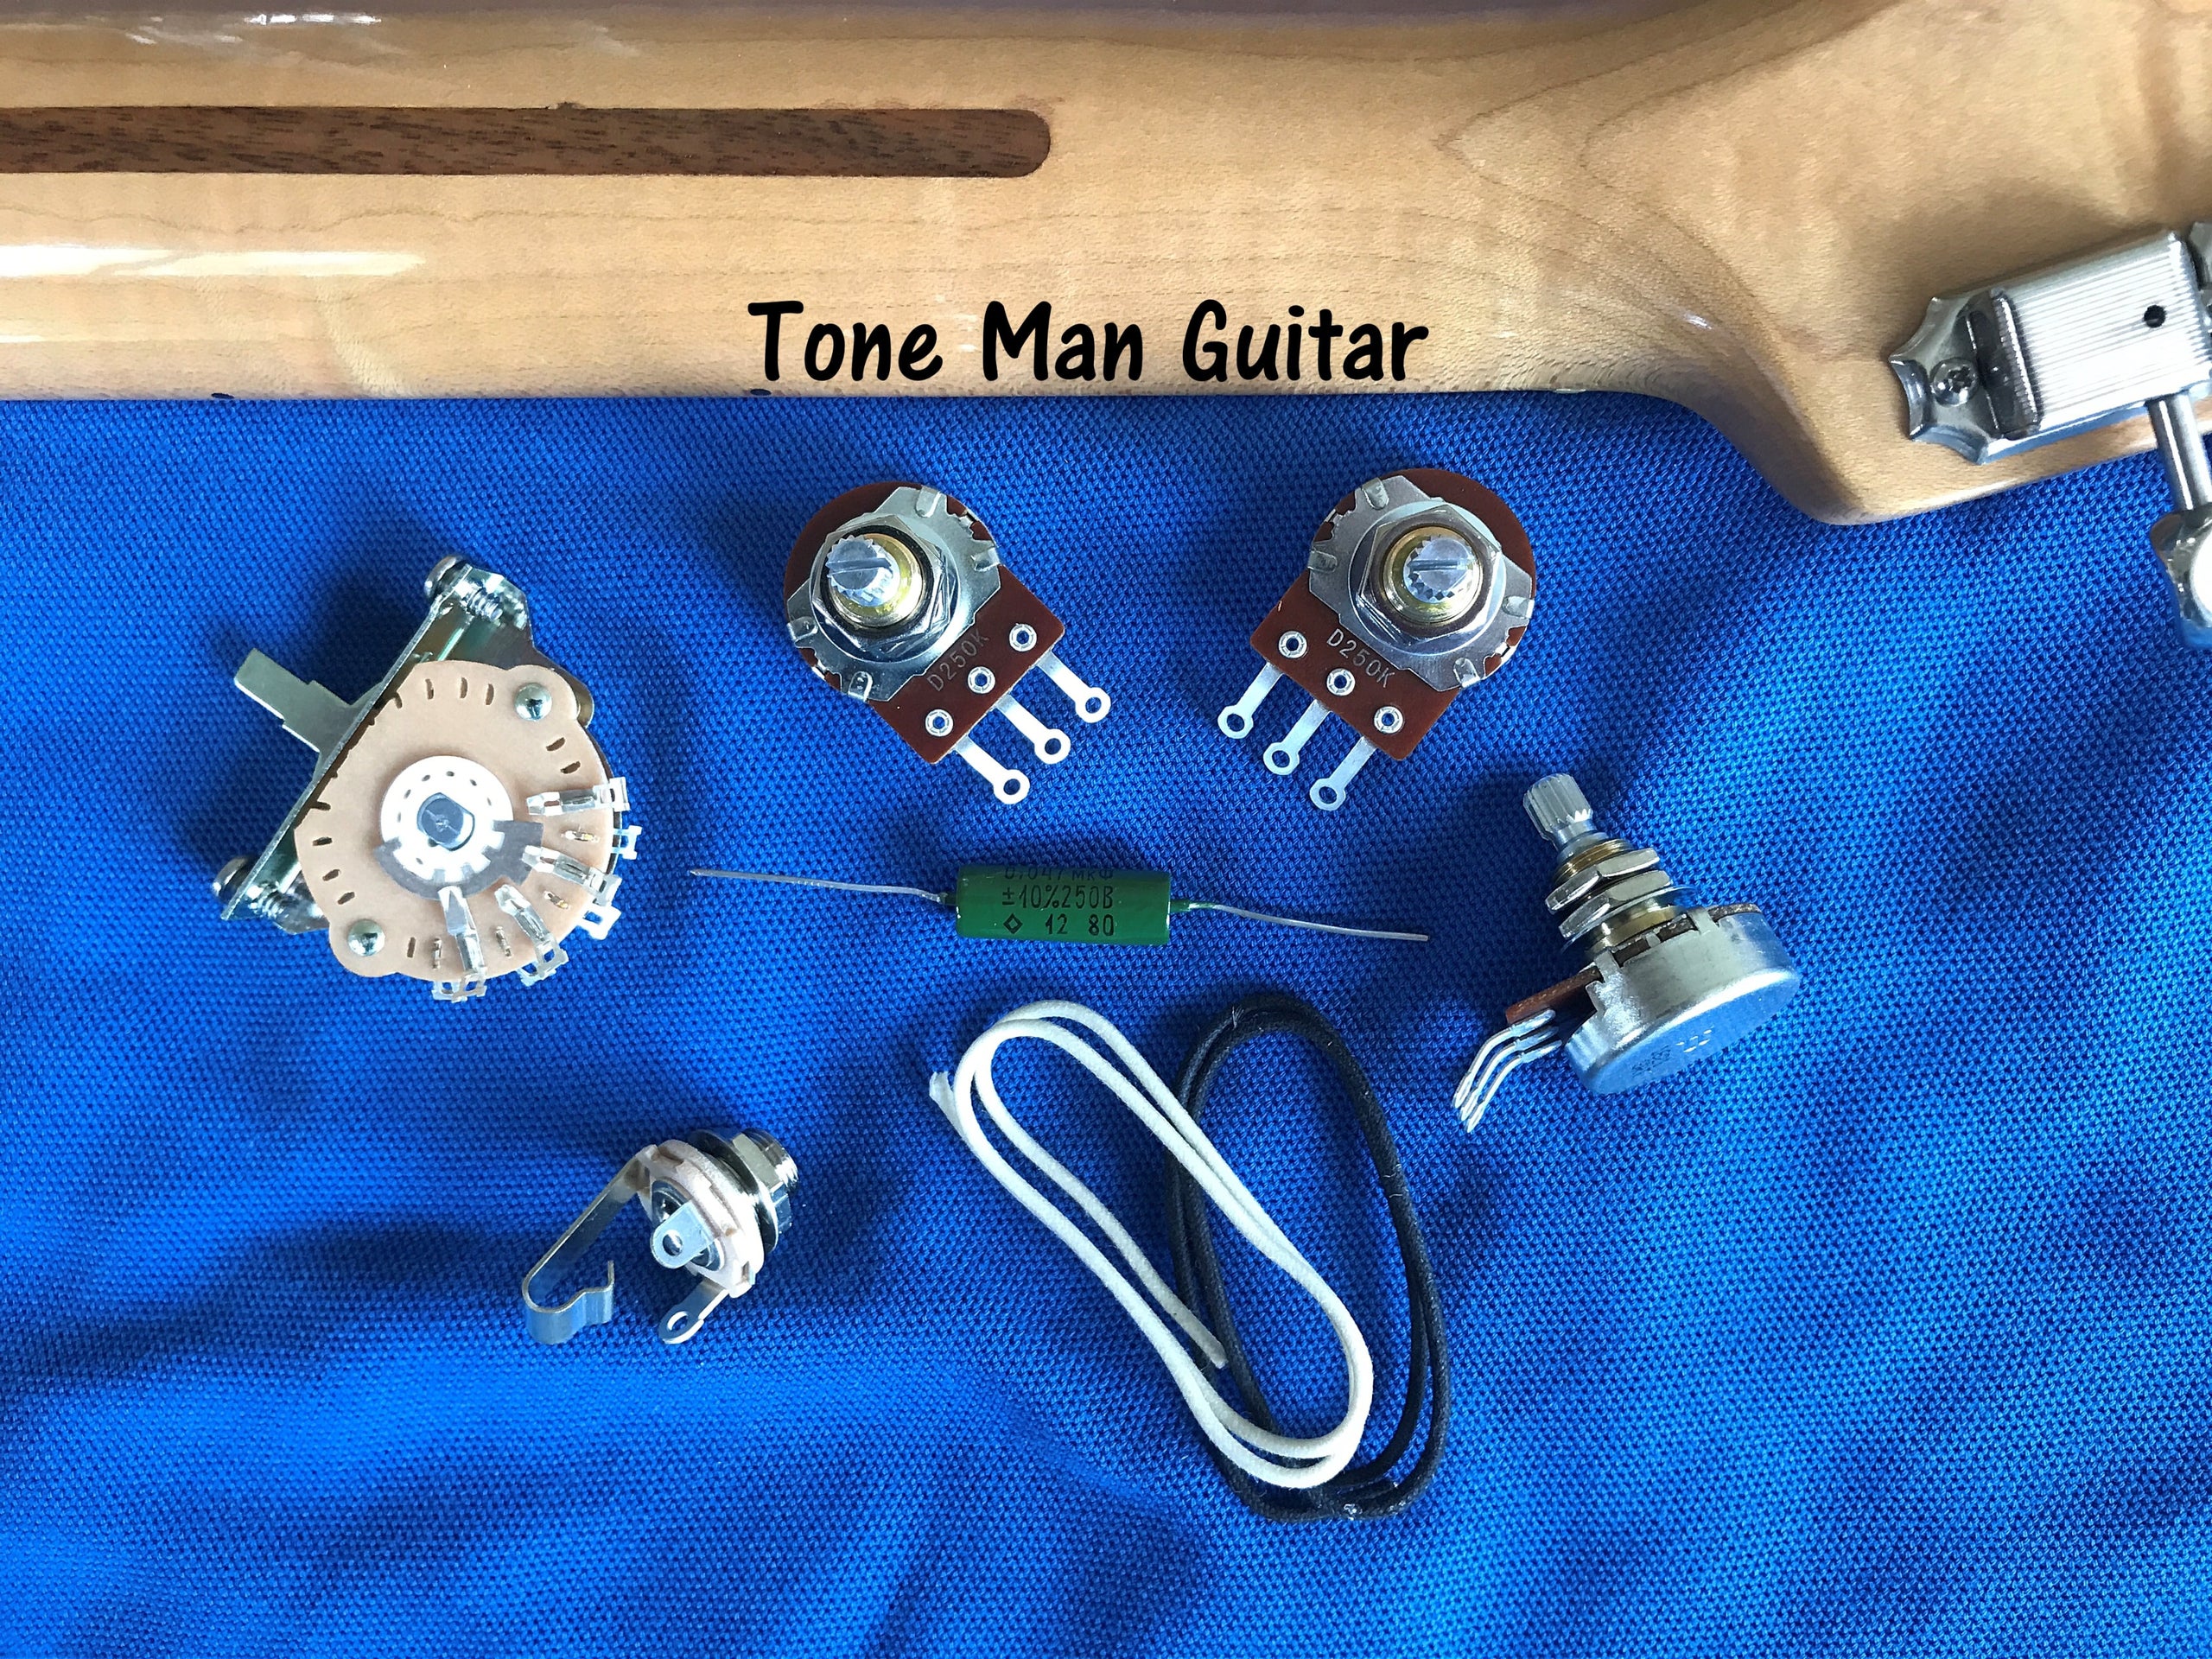 Guitar upgrade wiring kits  Tone Man Guitar upgrade wiring kits for tone  improvement (new)